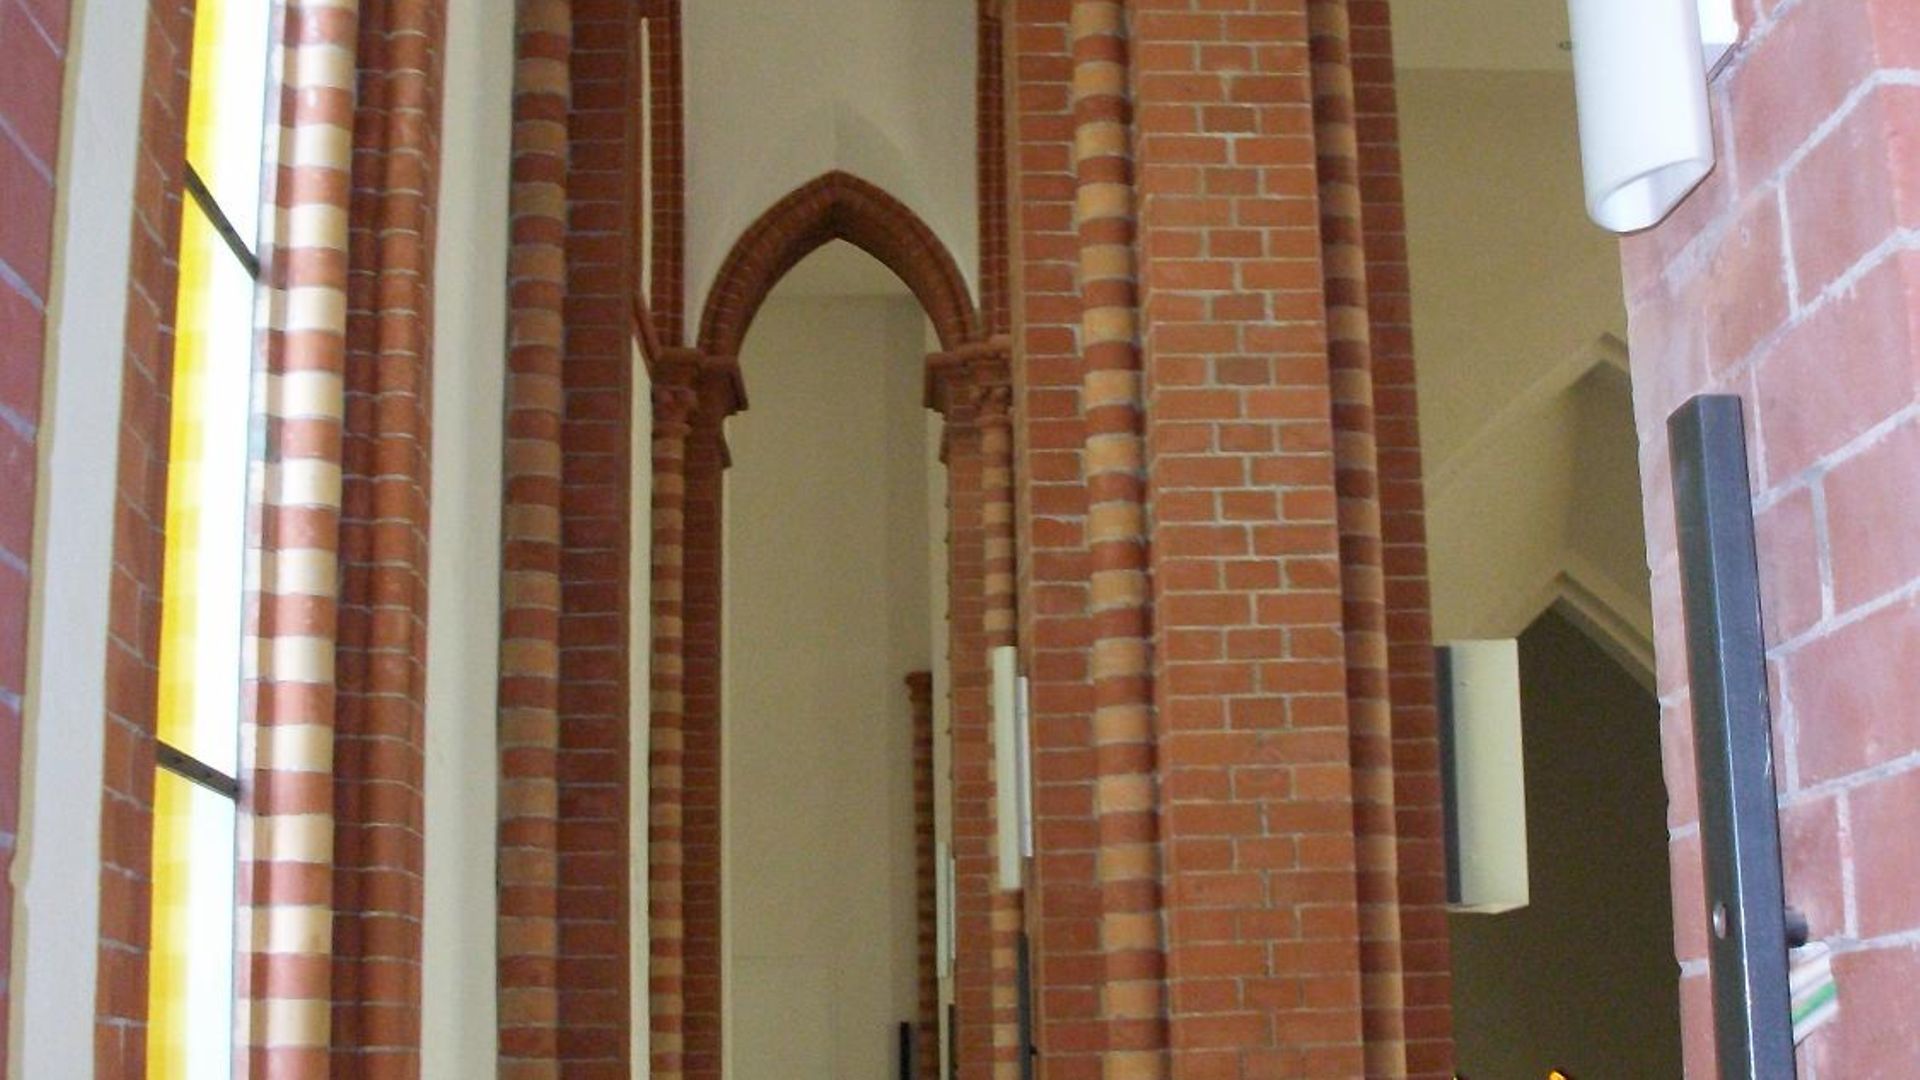 Ev.-Luth. Christuskirche, Eimsbüttel